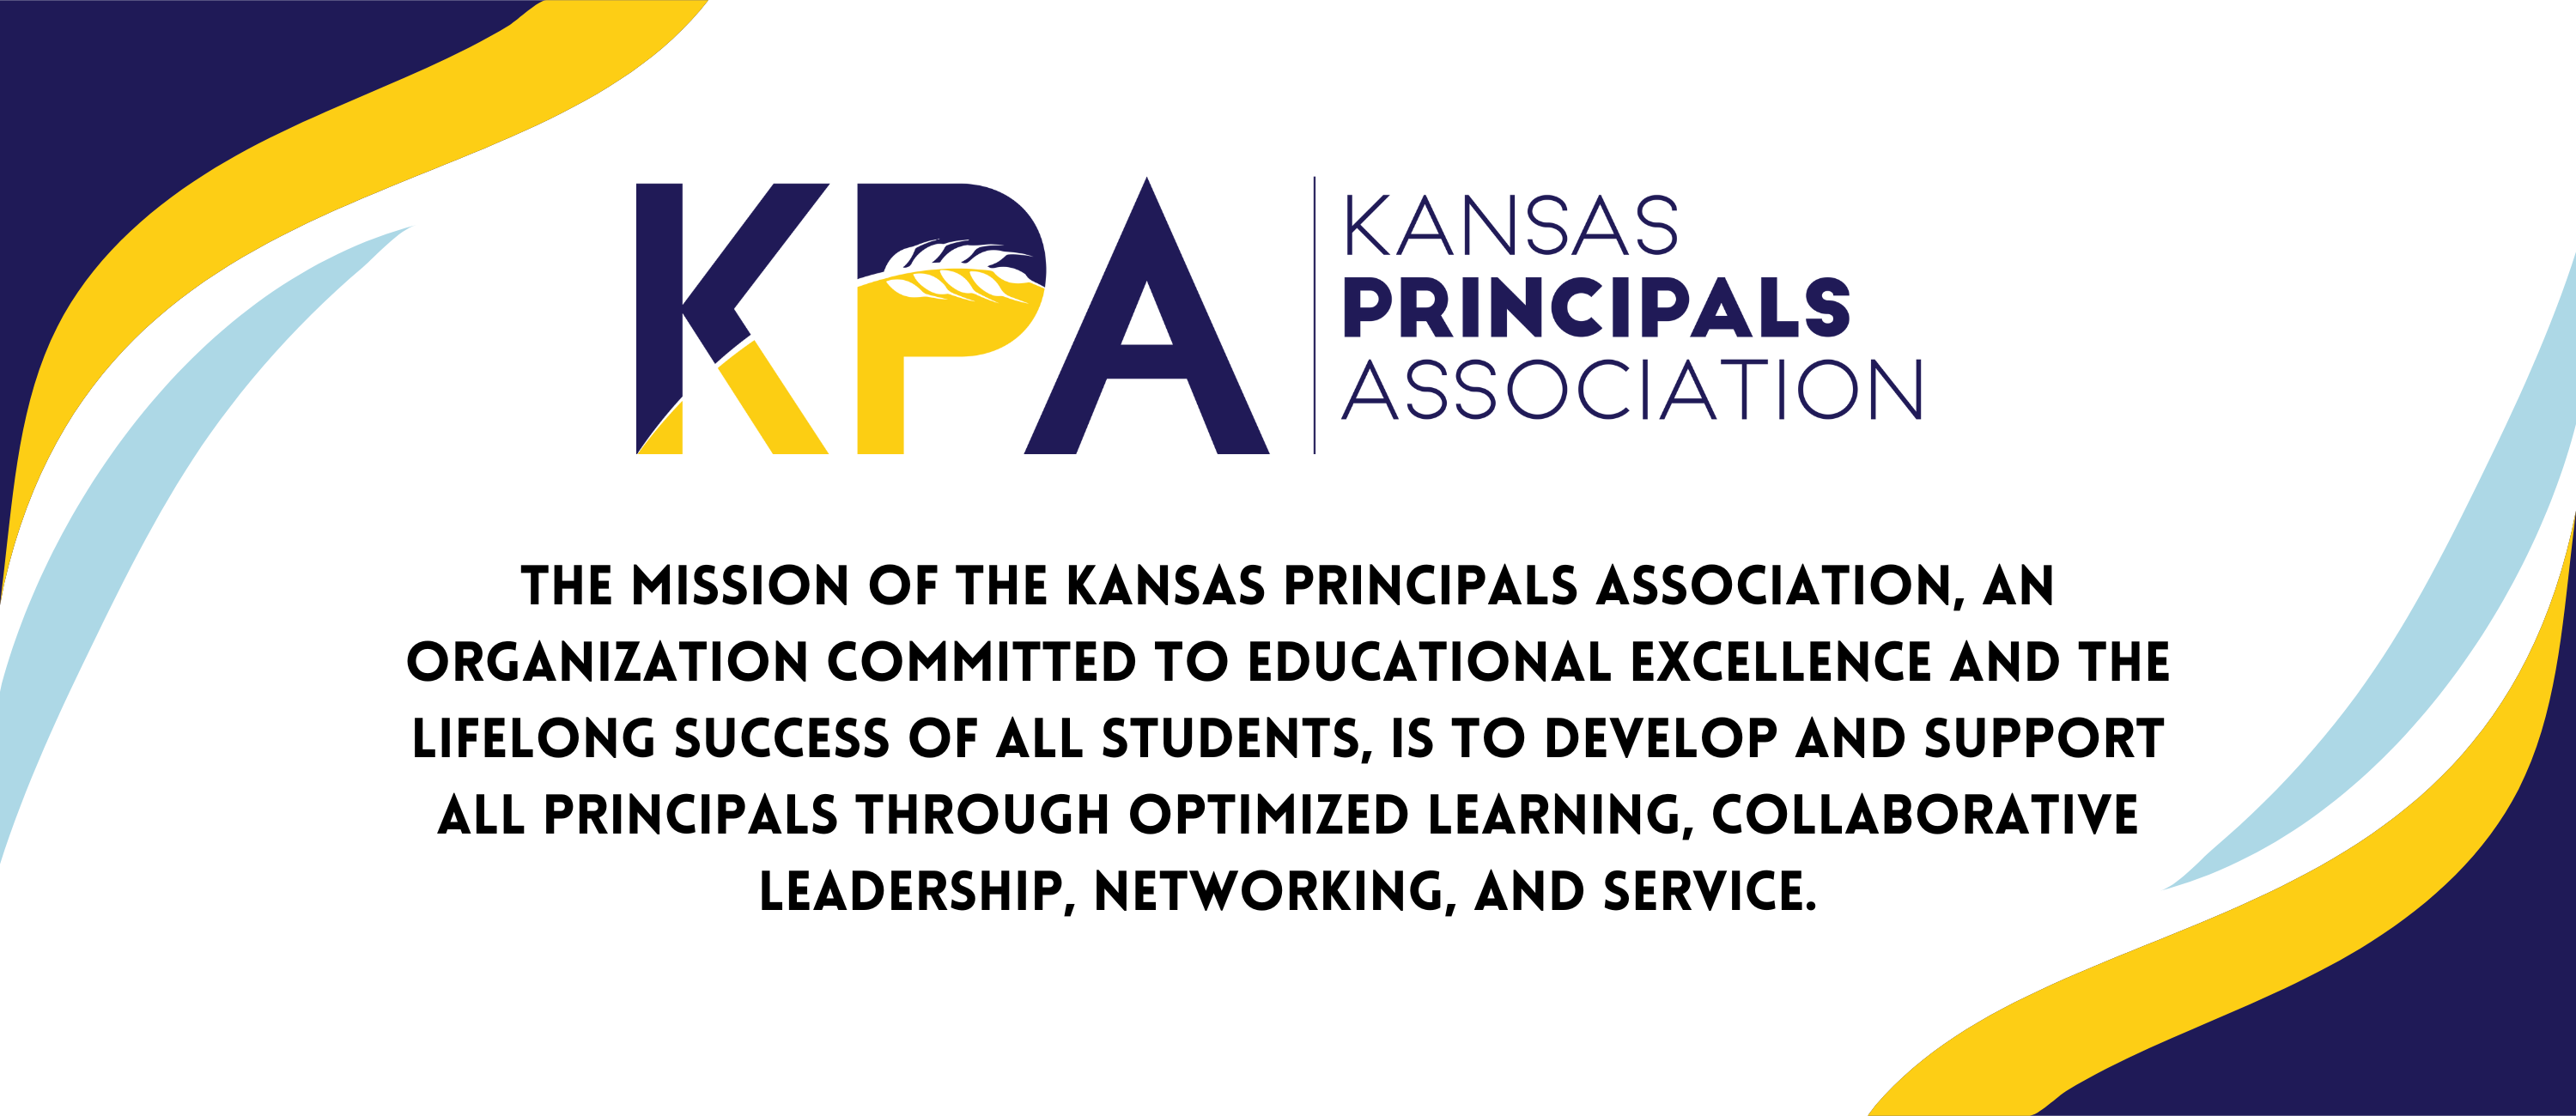 Kansas Principals Association Mission